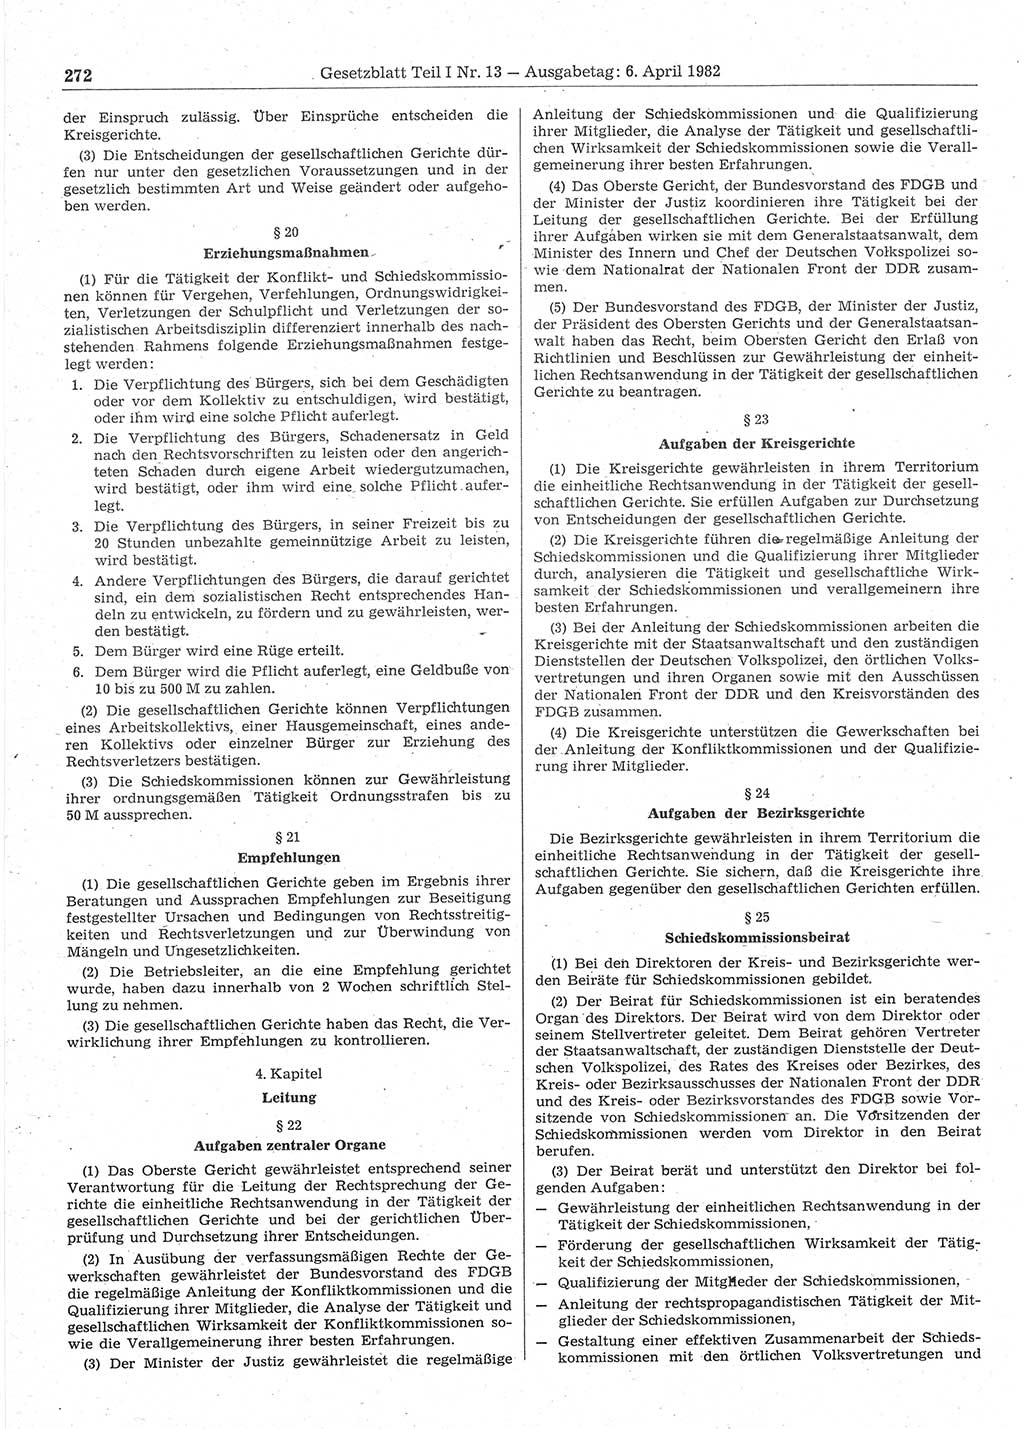 Gesetzblatt (GBl.) der Deutschen Demokratischen Republik (DDR) Teil Ⅰ 1982, Seite 272 (GBl. DDR Ⅰ 1982, S. 272)